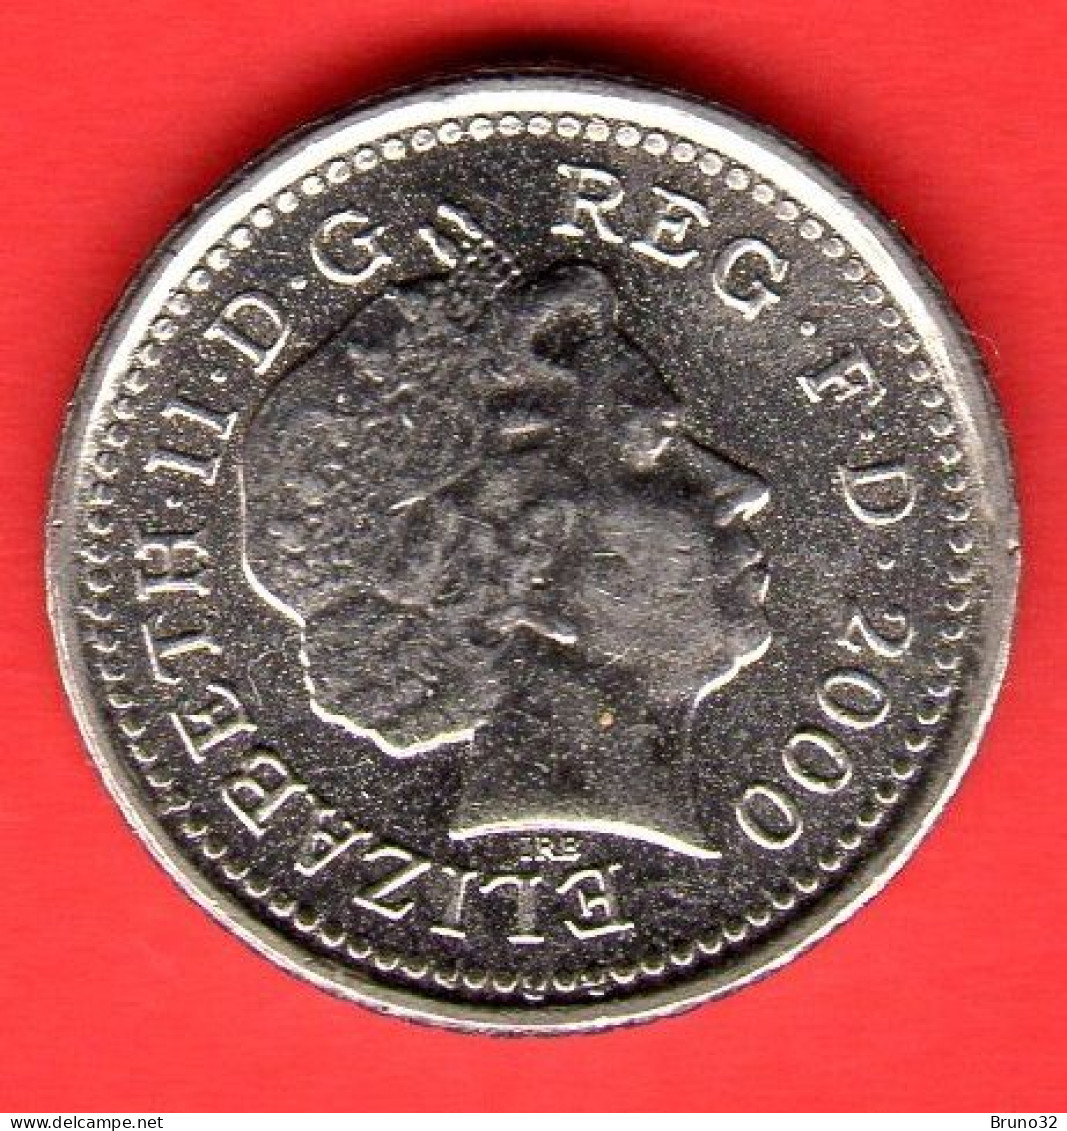 Gran Bretagna - Great Britain - GB - 5 Pence 2000 - FDC/UNC - Come Da Foto - 5 Pence & 5 New Pence